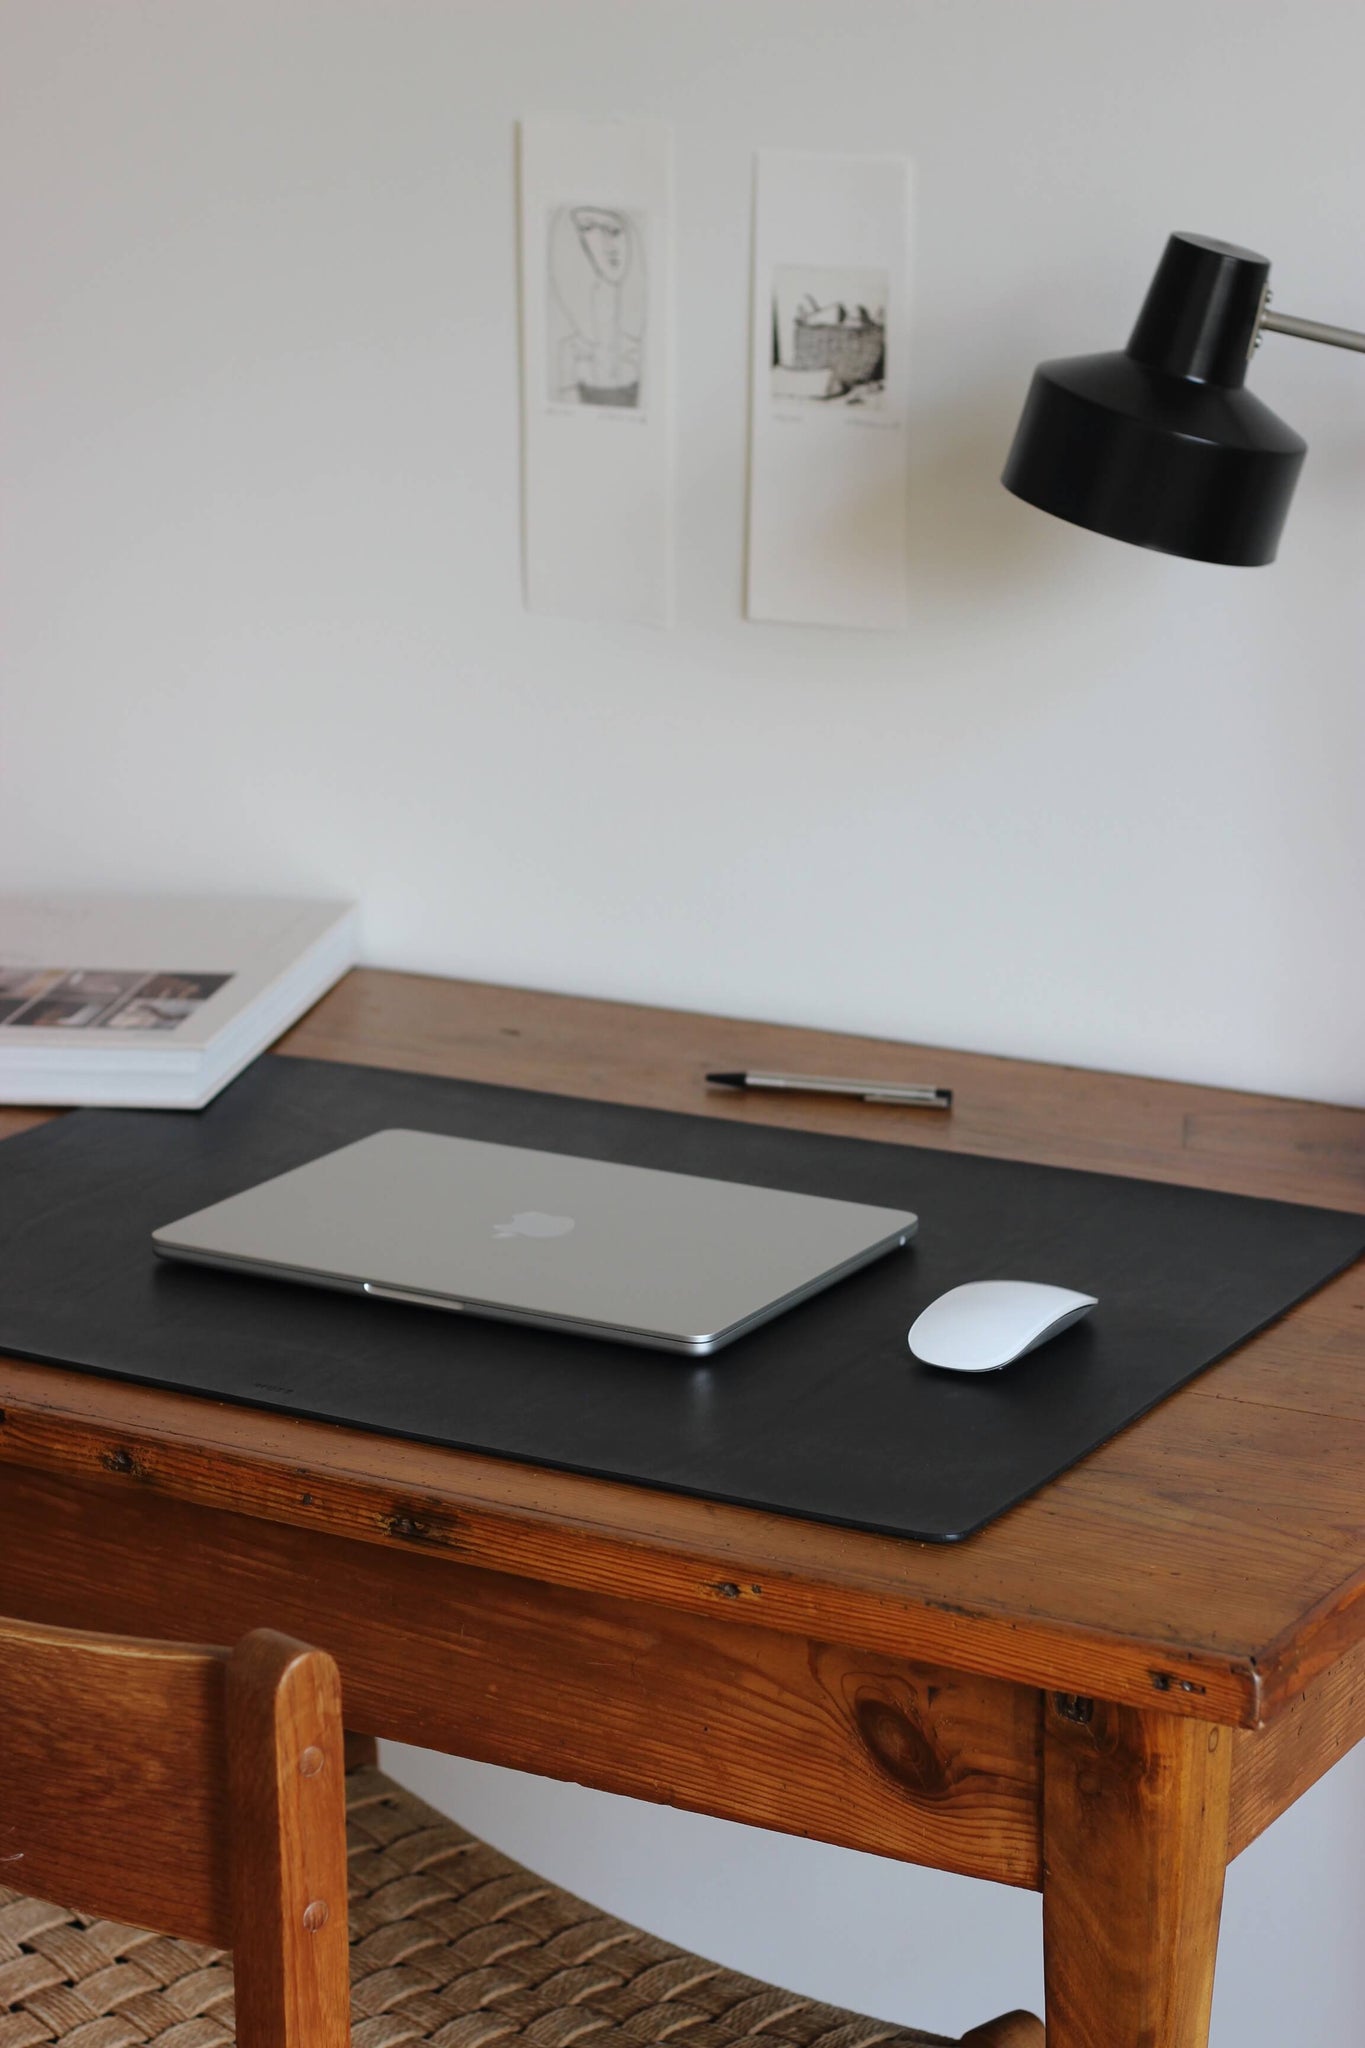 Seitliche Aufnahme einer Leder Schreibtischunterlage in Schwarz auf einem Schreibtisch.